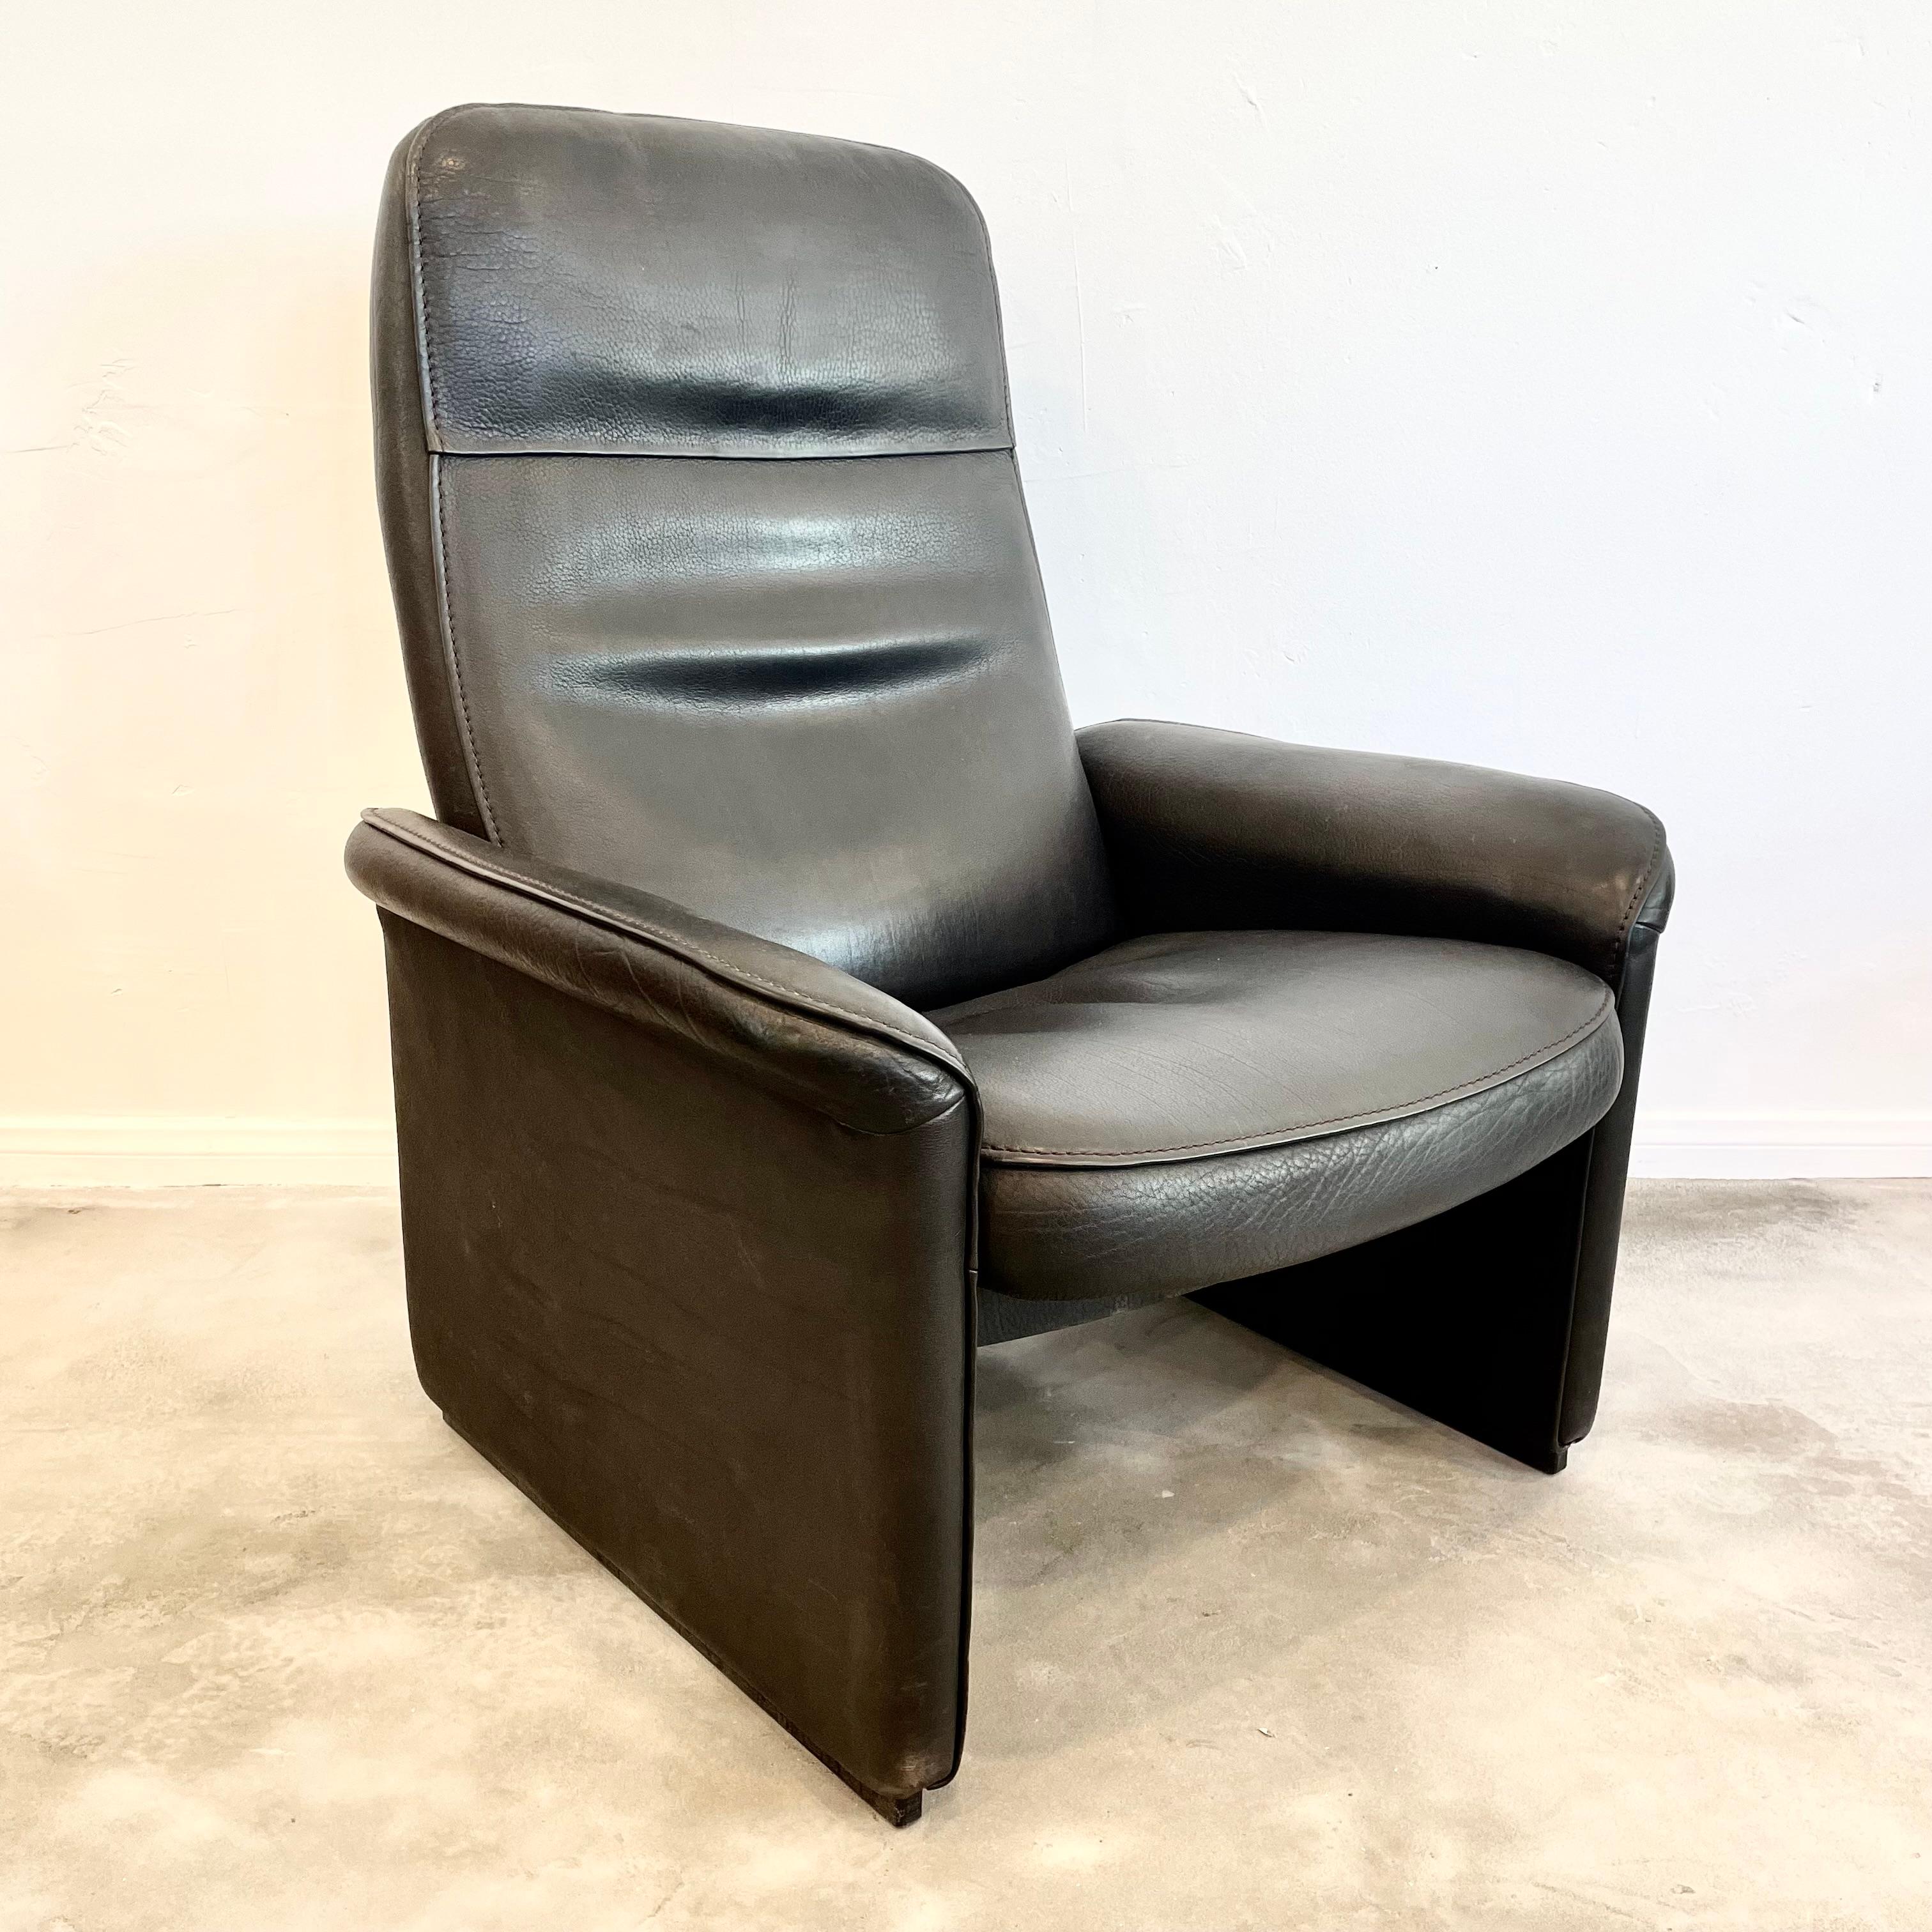 Ein Paar Loungesessel von De Sede aus den 1970er Jahren, Schweiz. Die Stühle sind mit einem Verstellmechanismus ausgestattet, der es Ihnen ermöglicht, die Stühle fast flach zu stellen, wenn Sie es wünschen. Äußerst komfortabel. Diese Stühle haben